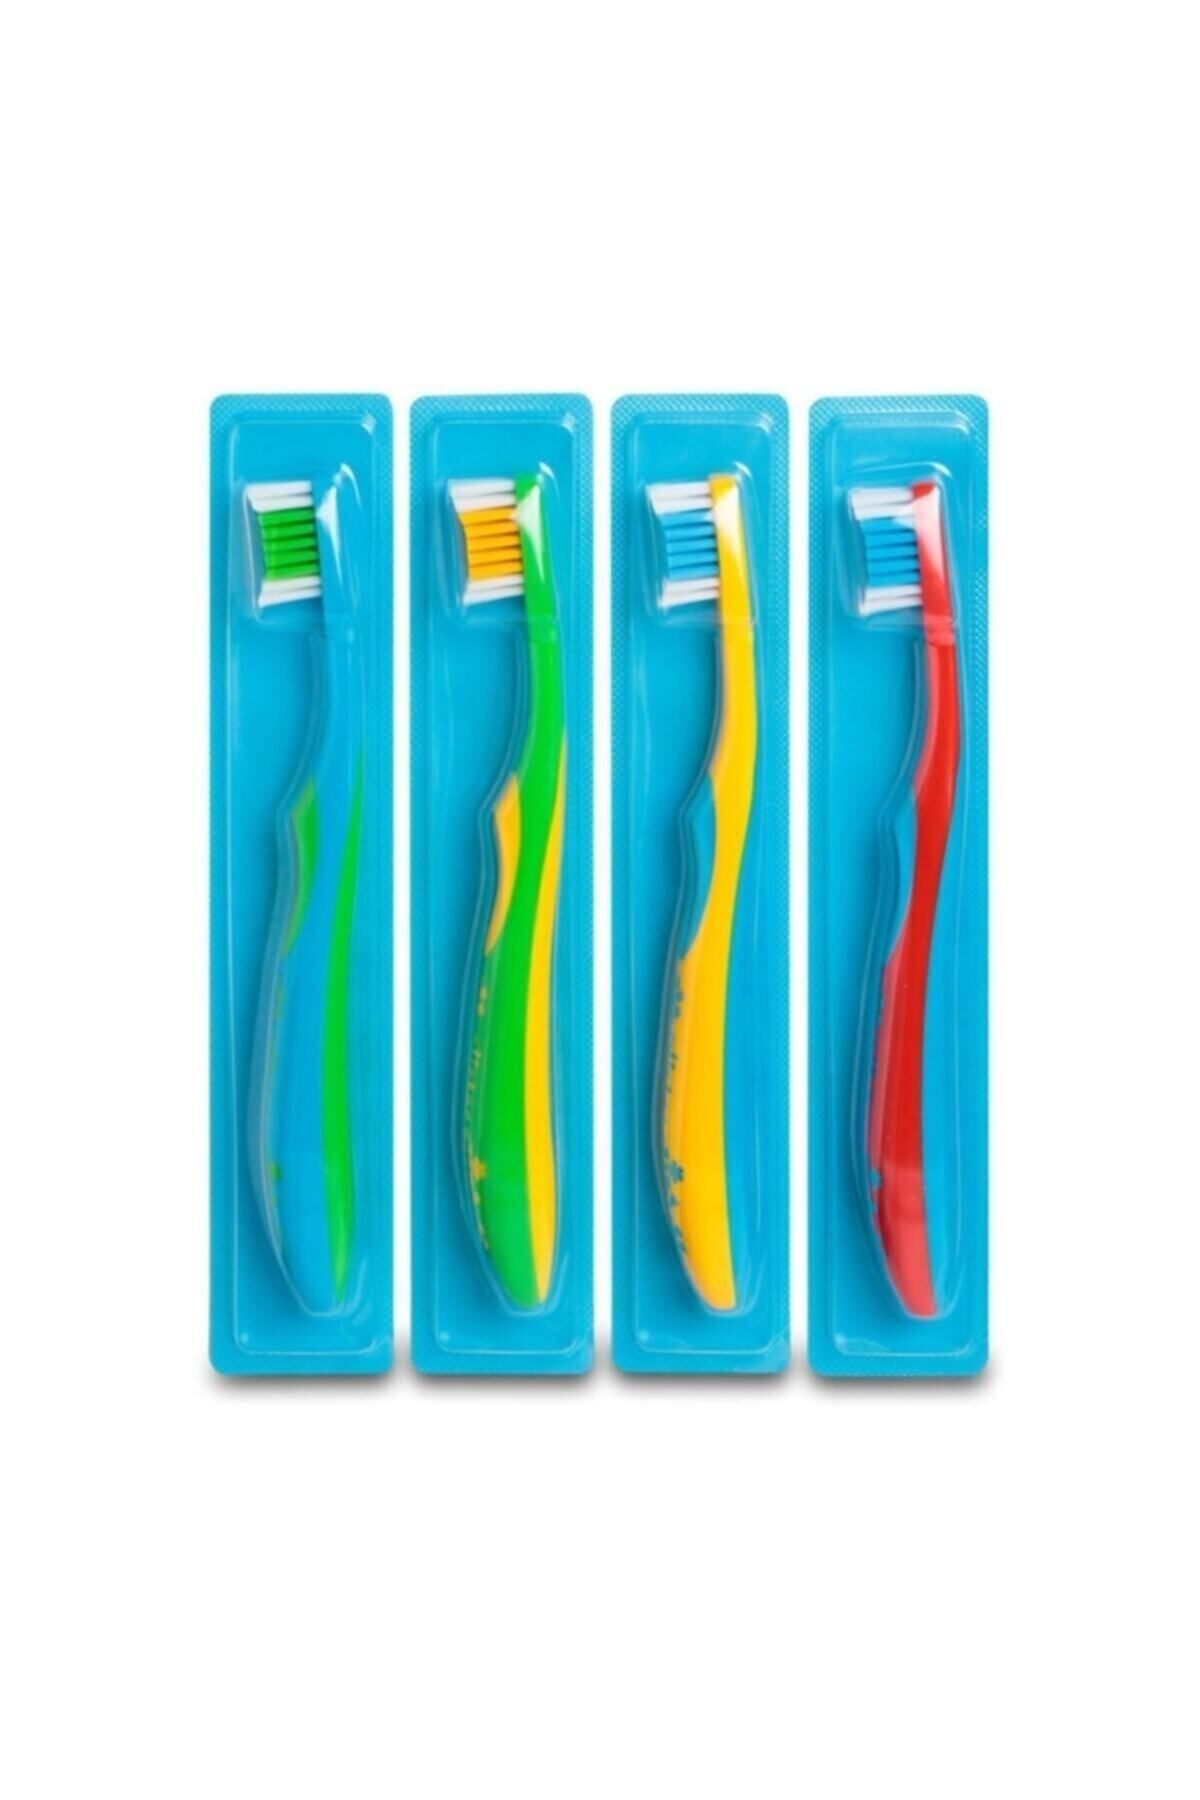 GLİSTER Amway Çocuklar Için Diş Fırçası ™ (4 Adet) Çoçuk Diş Fırçası